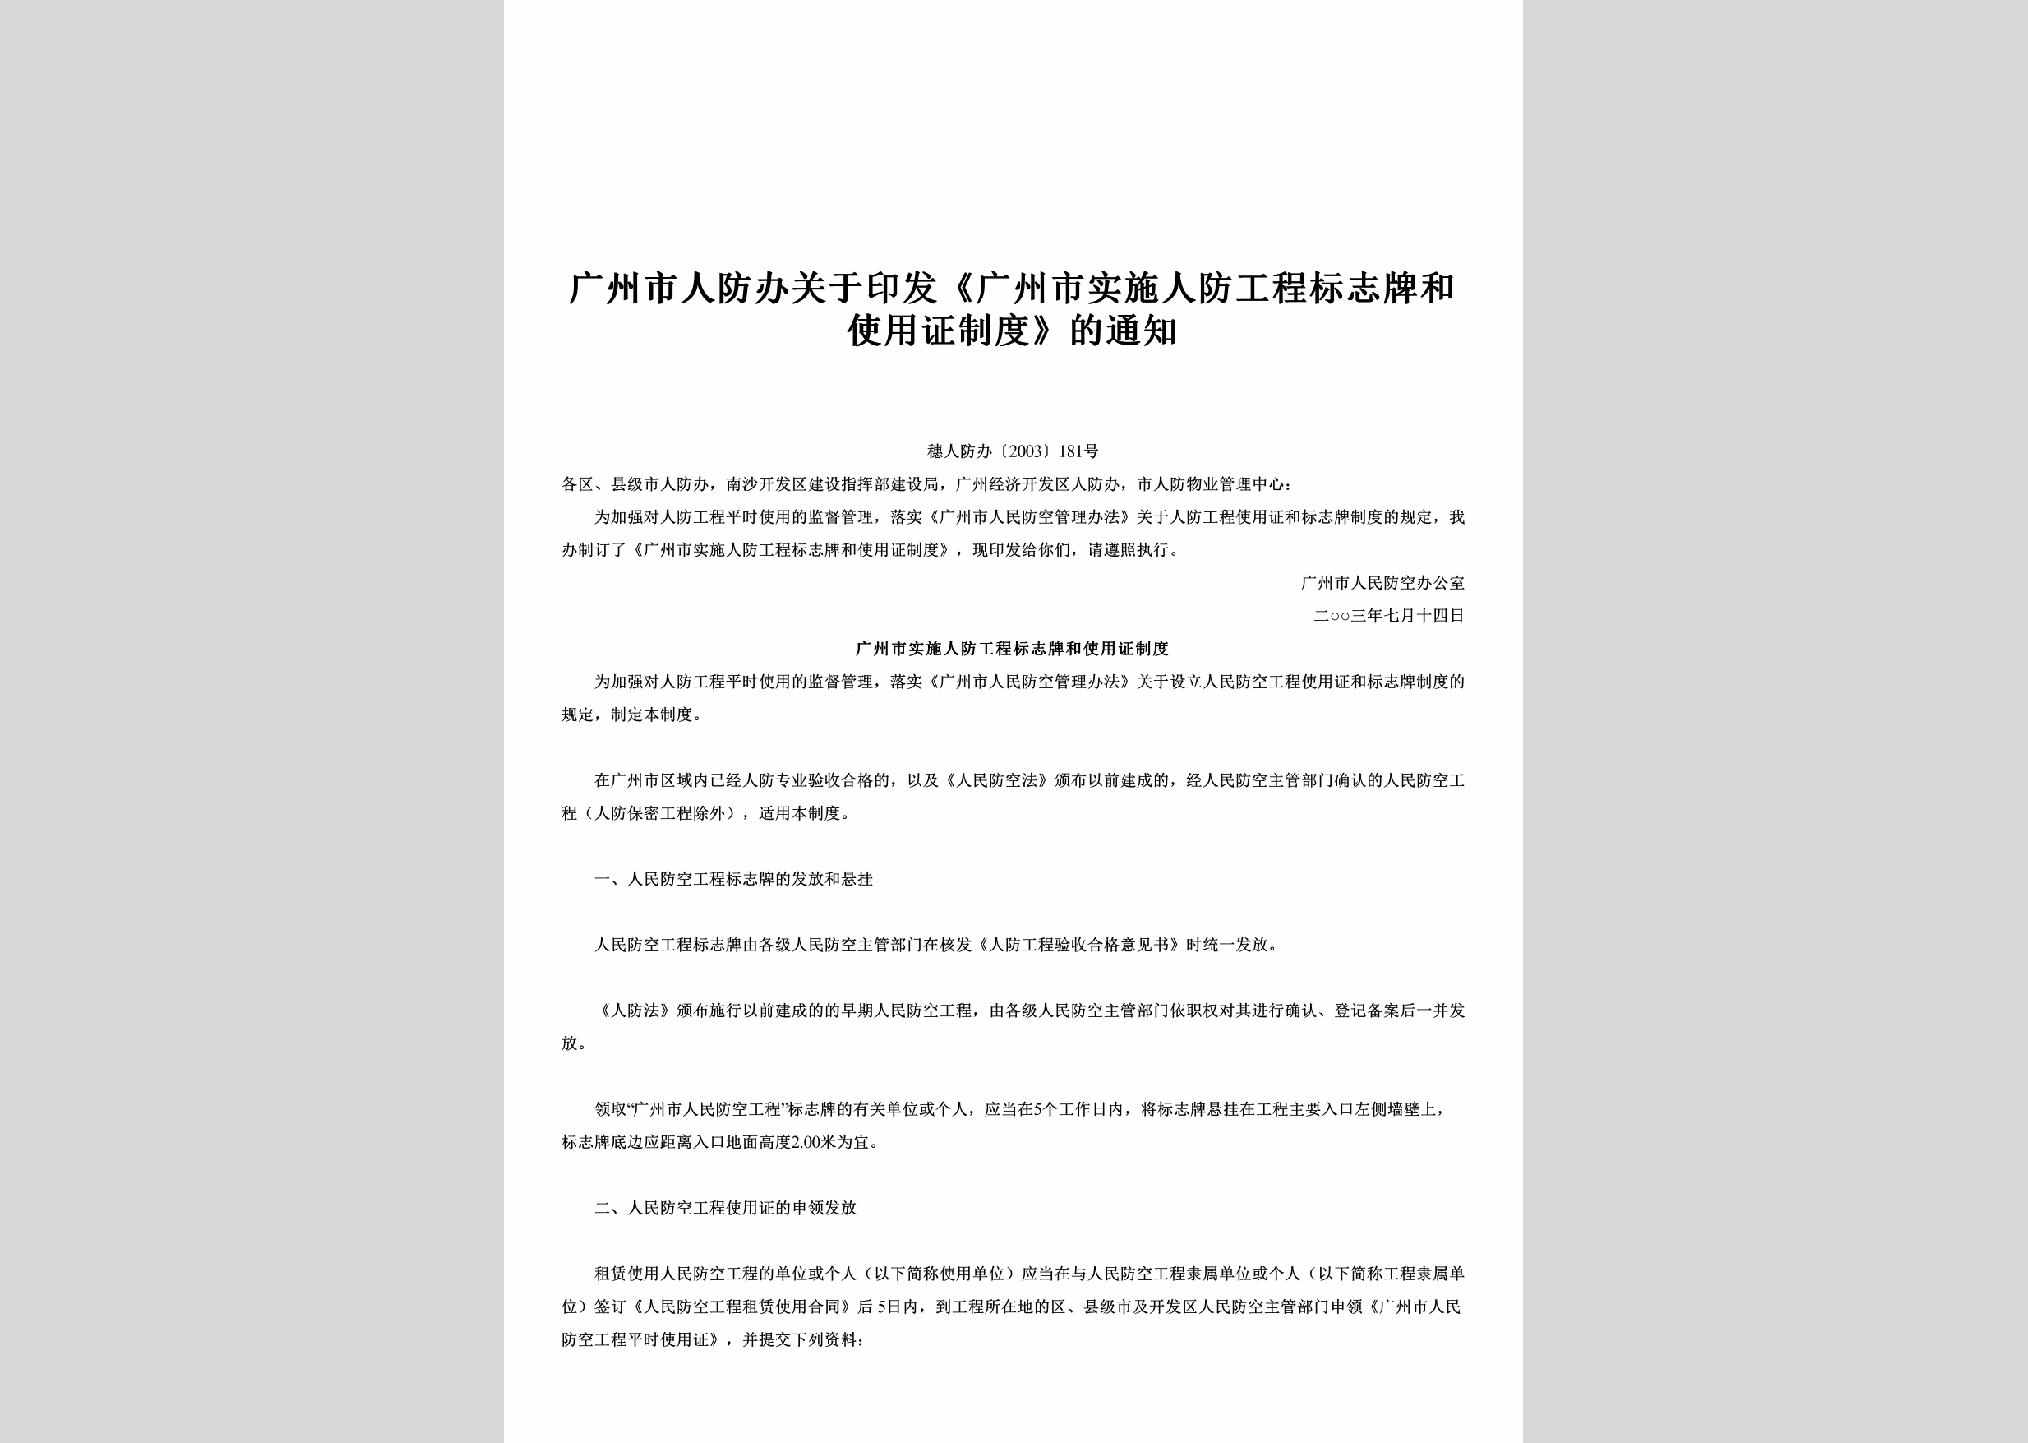 穗人防办[2003]181号：关于印发《广州市实施人防工程标志牌和使用证制度》的通知